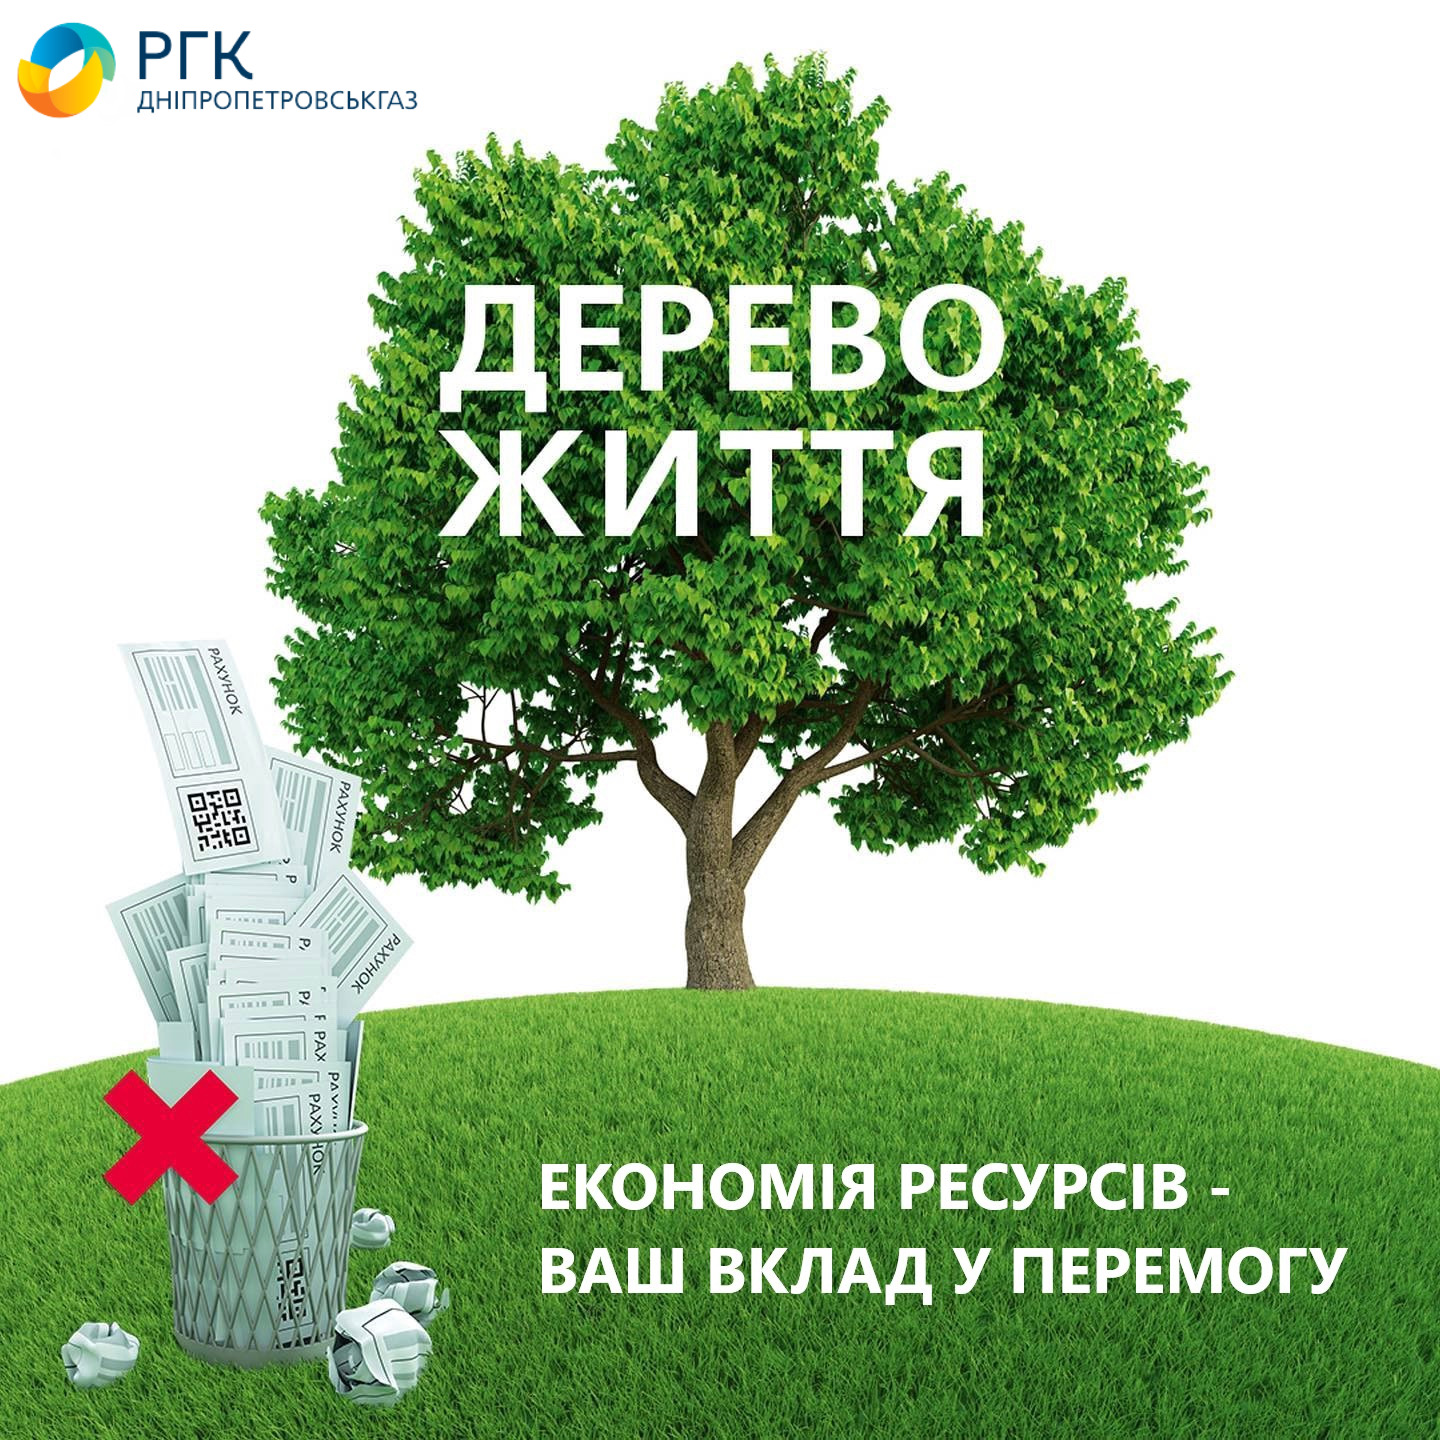 Дніпропетровськгаз: відмова від паперових платіжок за розподіл газу – економія дефіцитних енергоресурсів